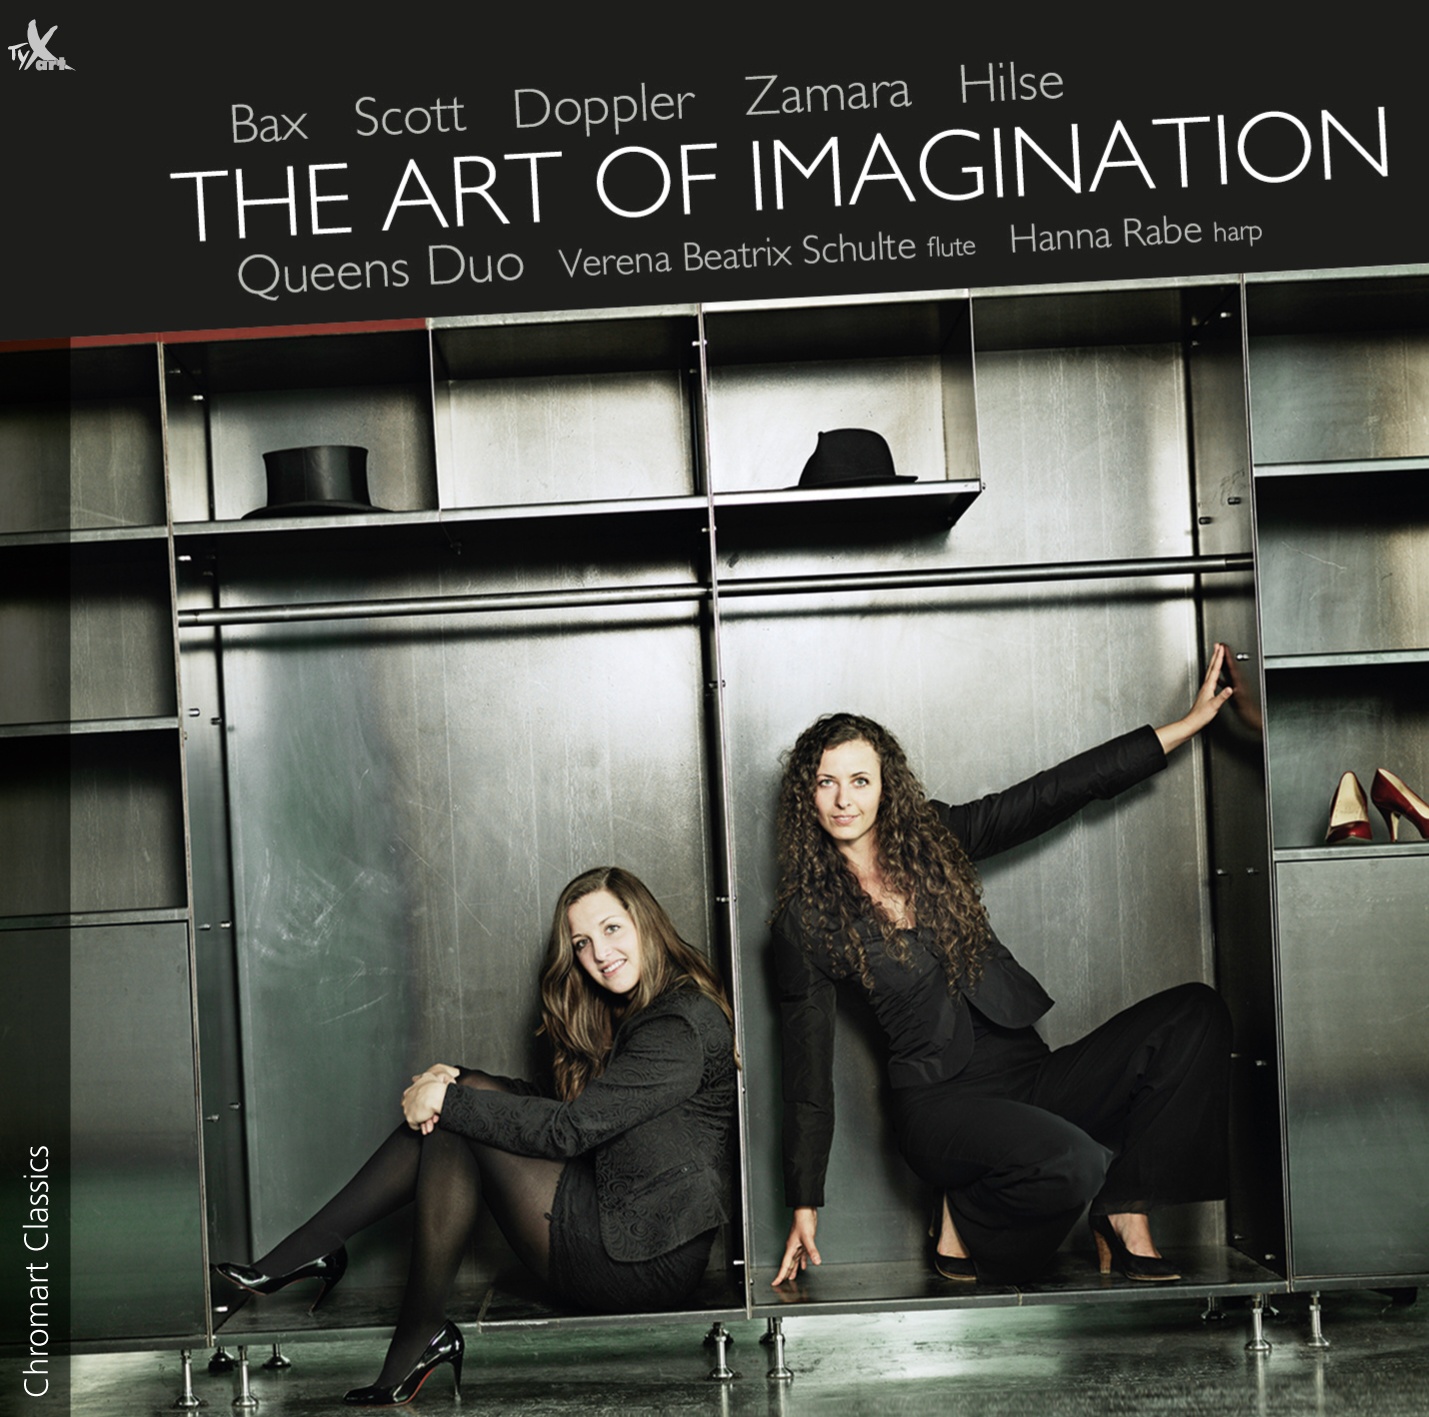 The Art of Imagination - Queens Duo